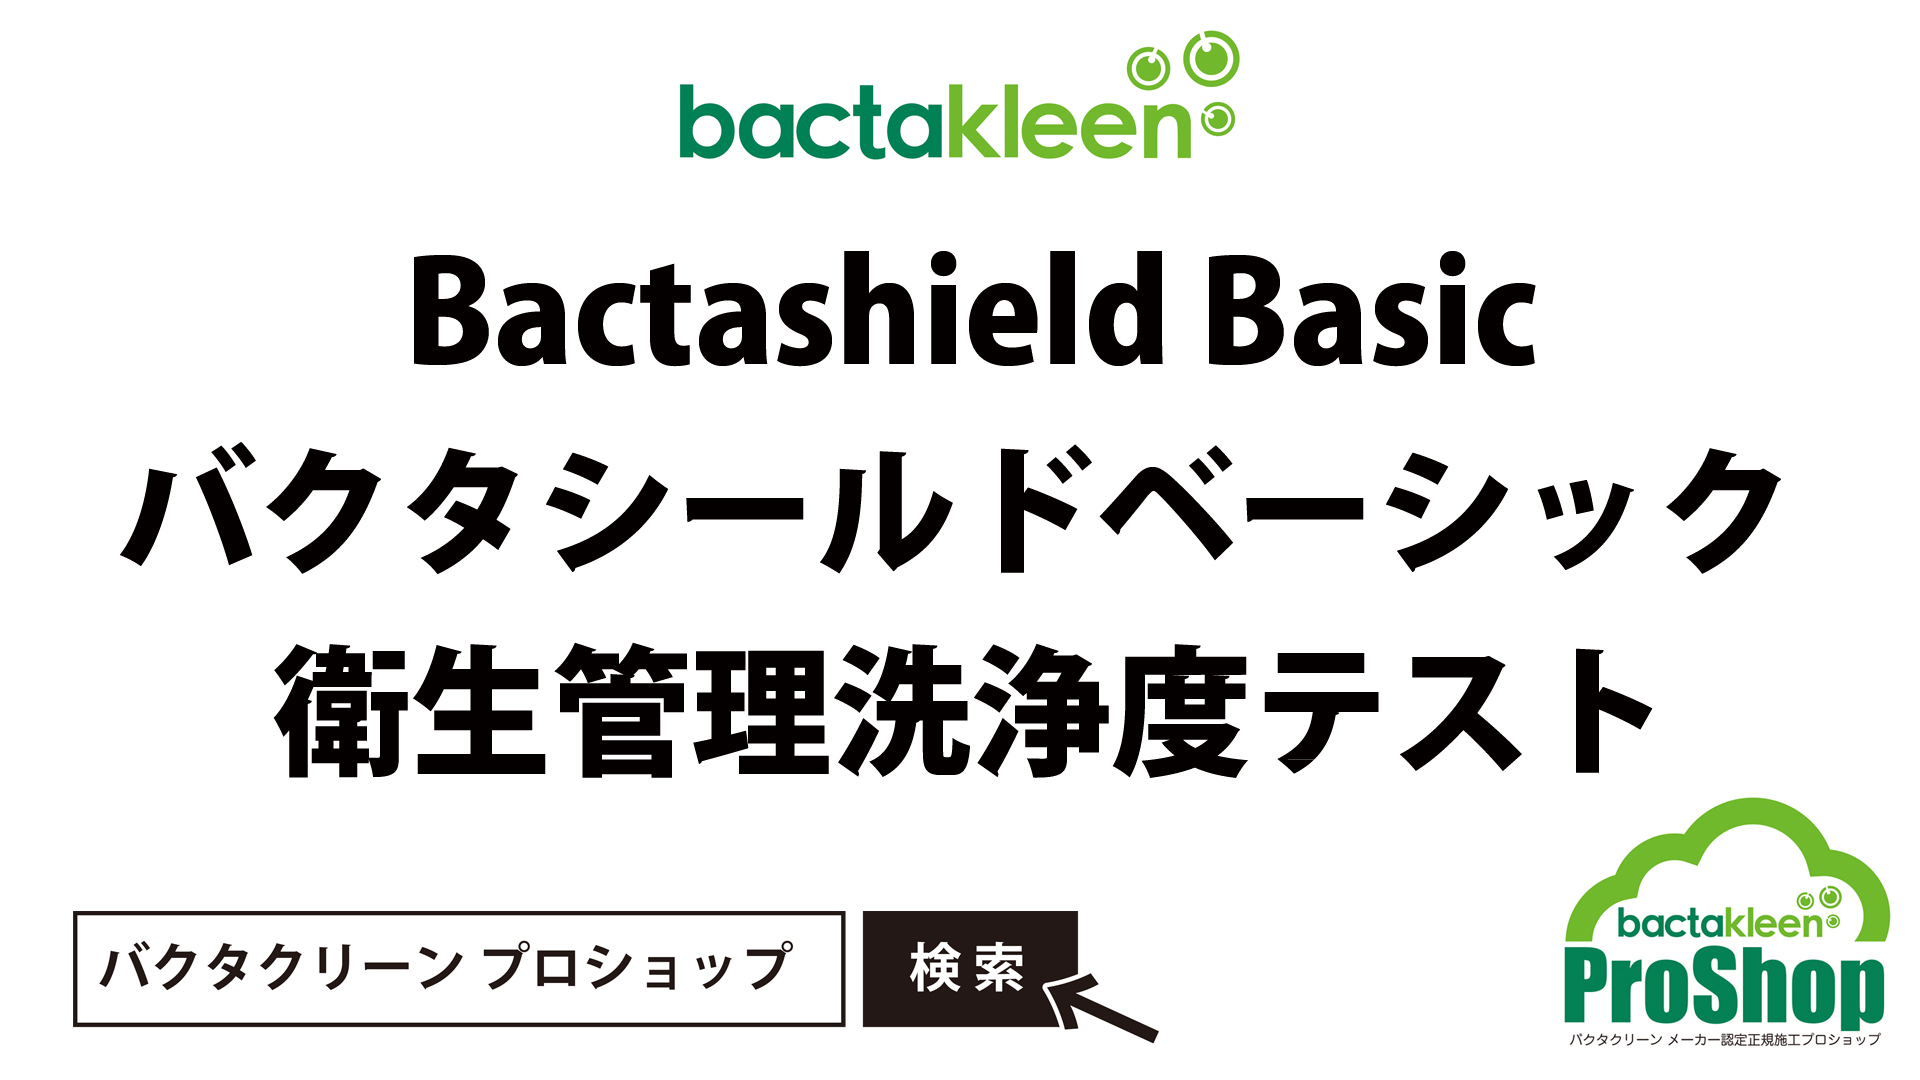 バクタクリーン/Bactakleen バクタシールドベーシック 衛生管理洗浄度テスト